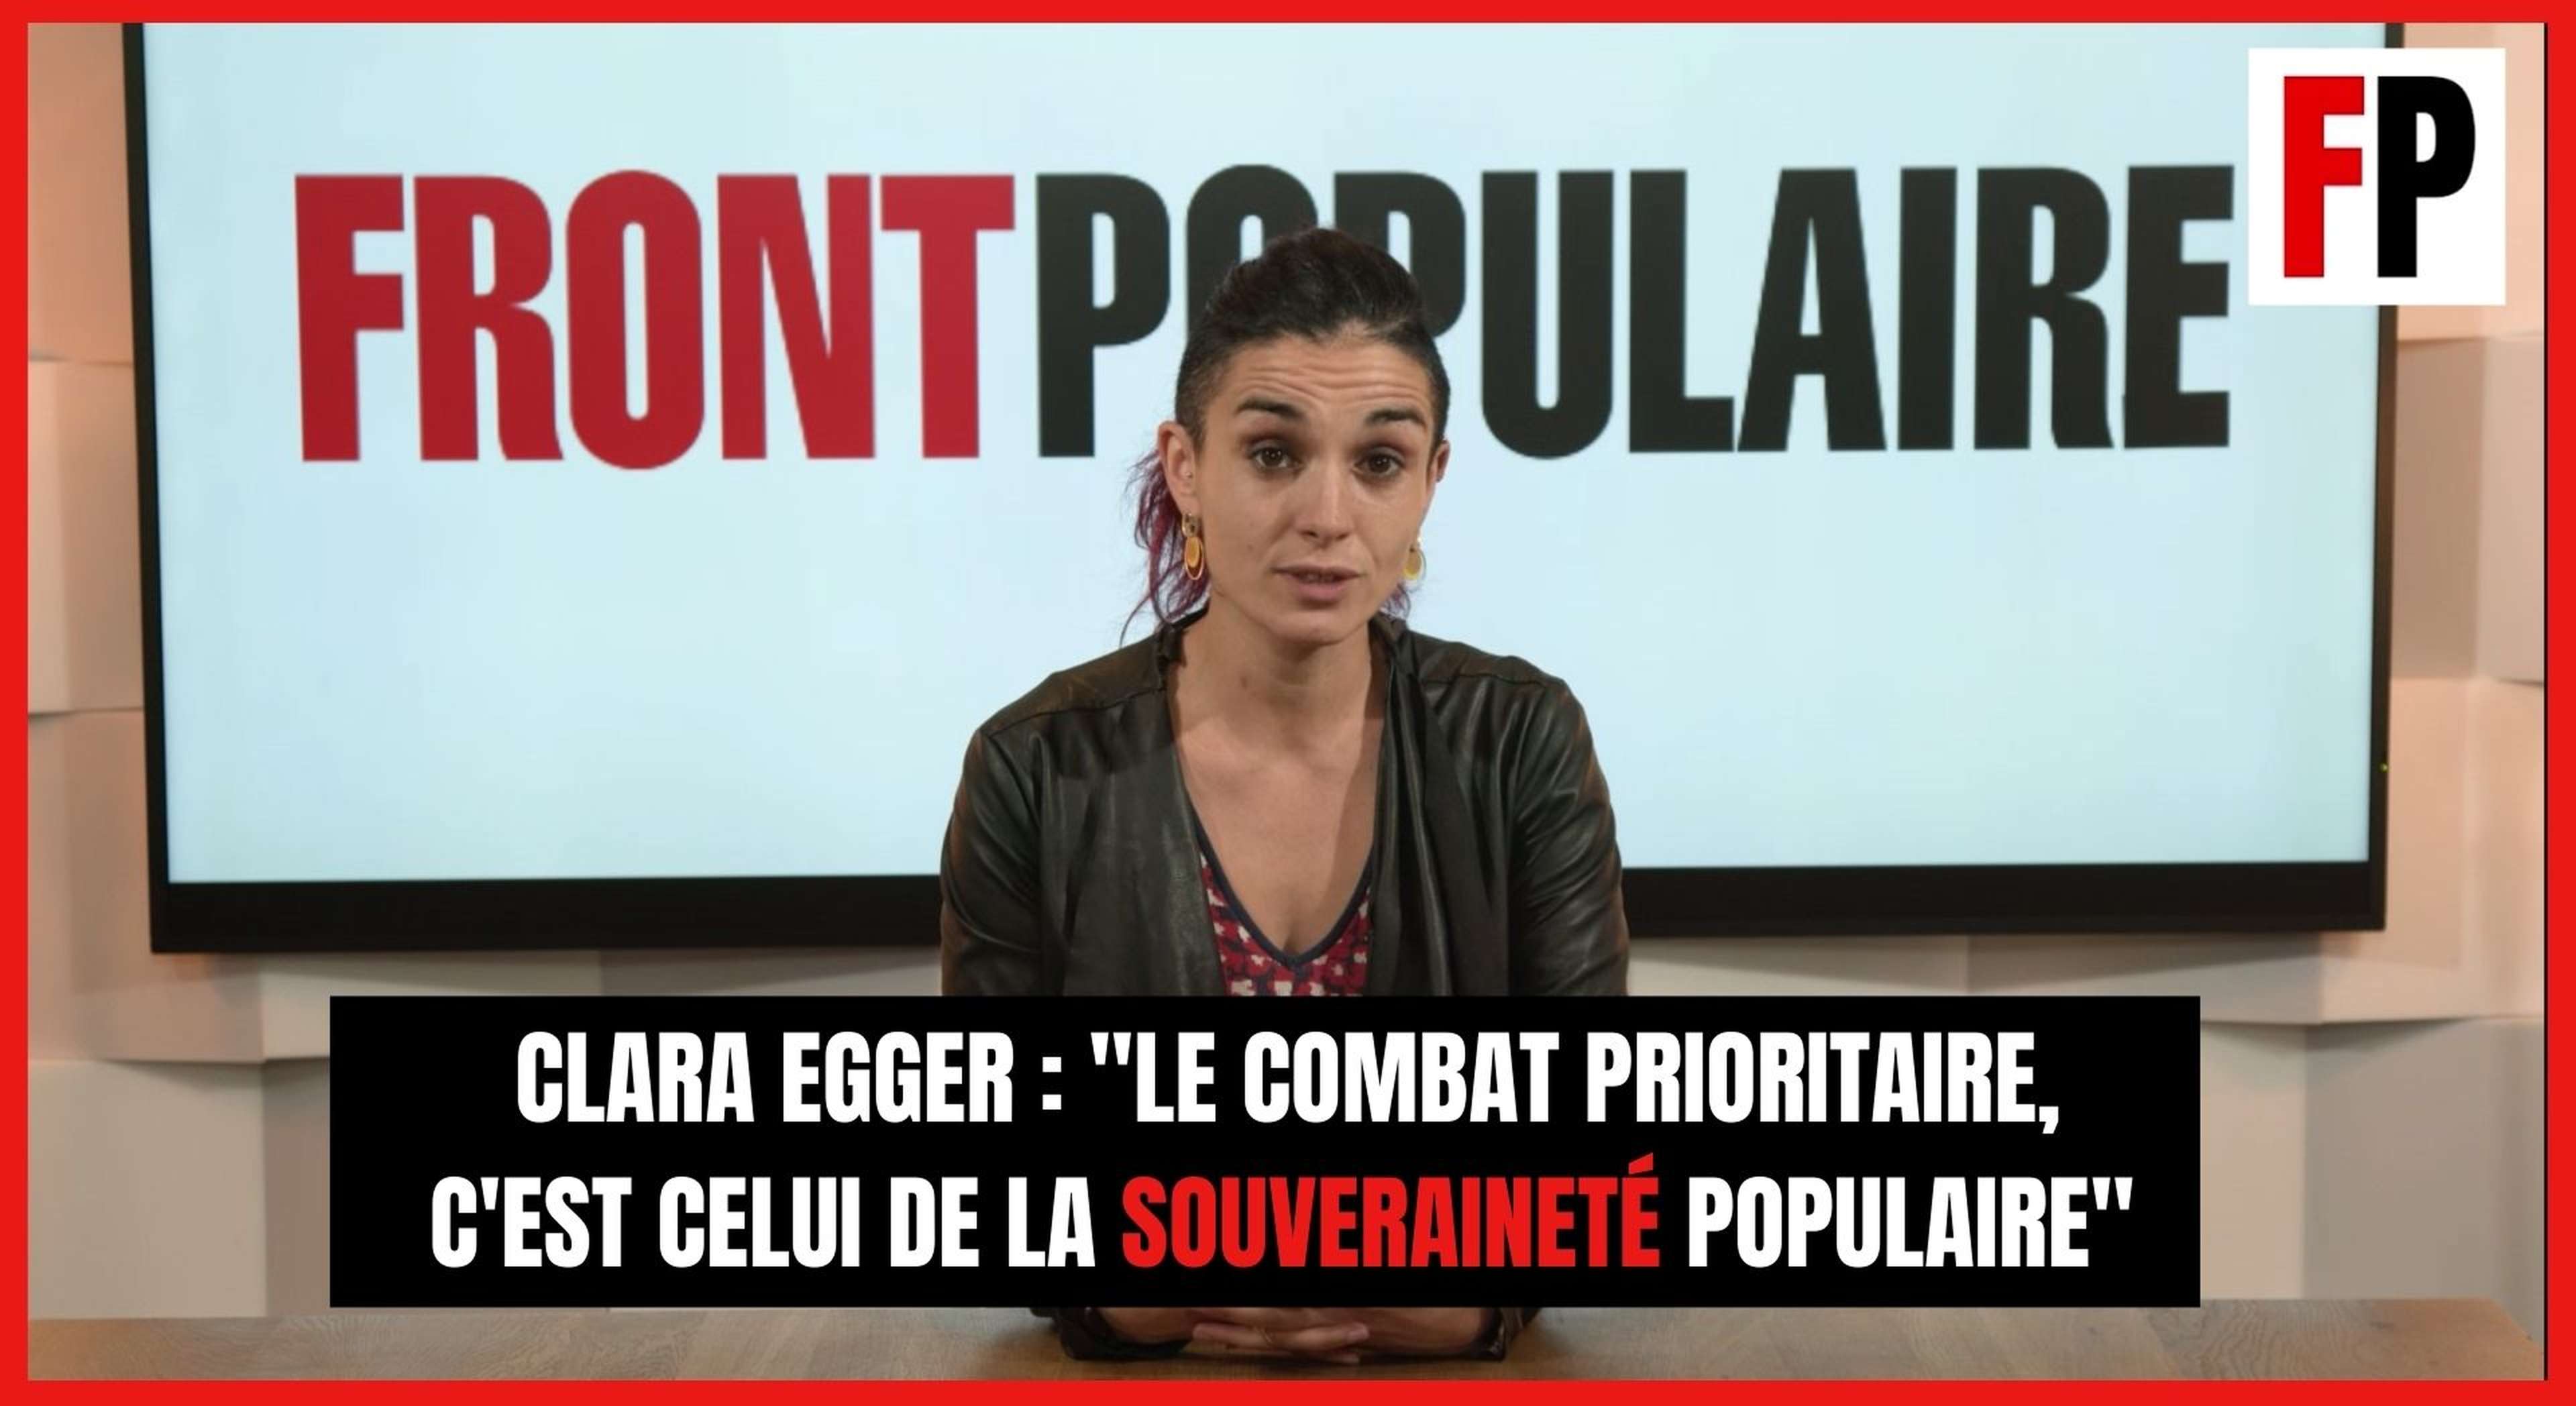 Clara Egger : "Le combat prioritaire, c'est celui de la souveraineté populaire"